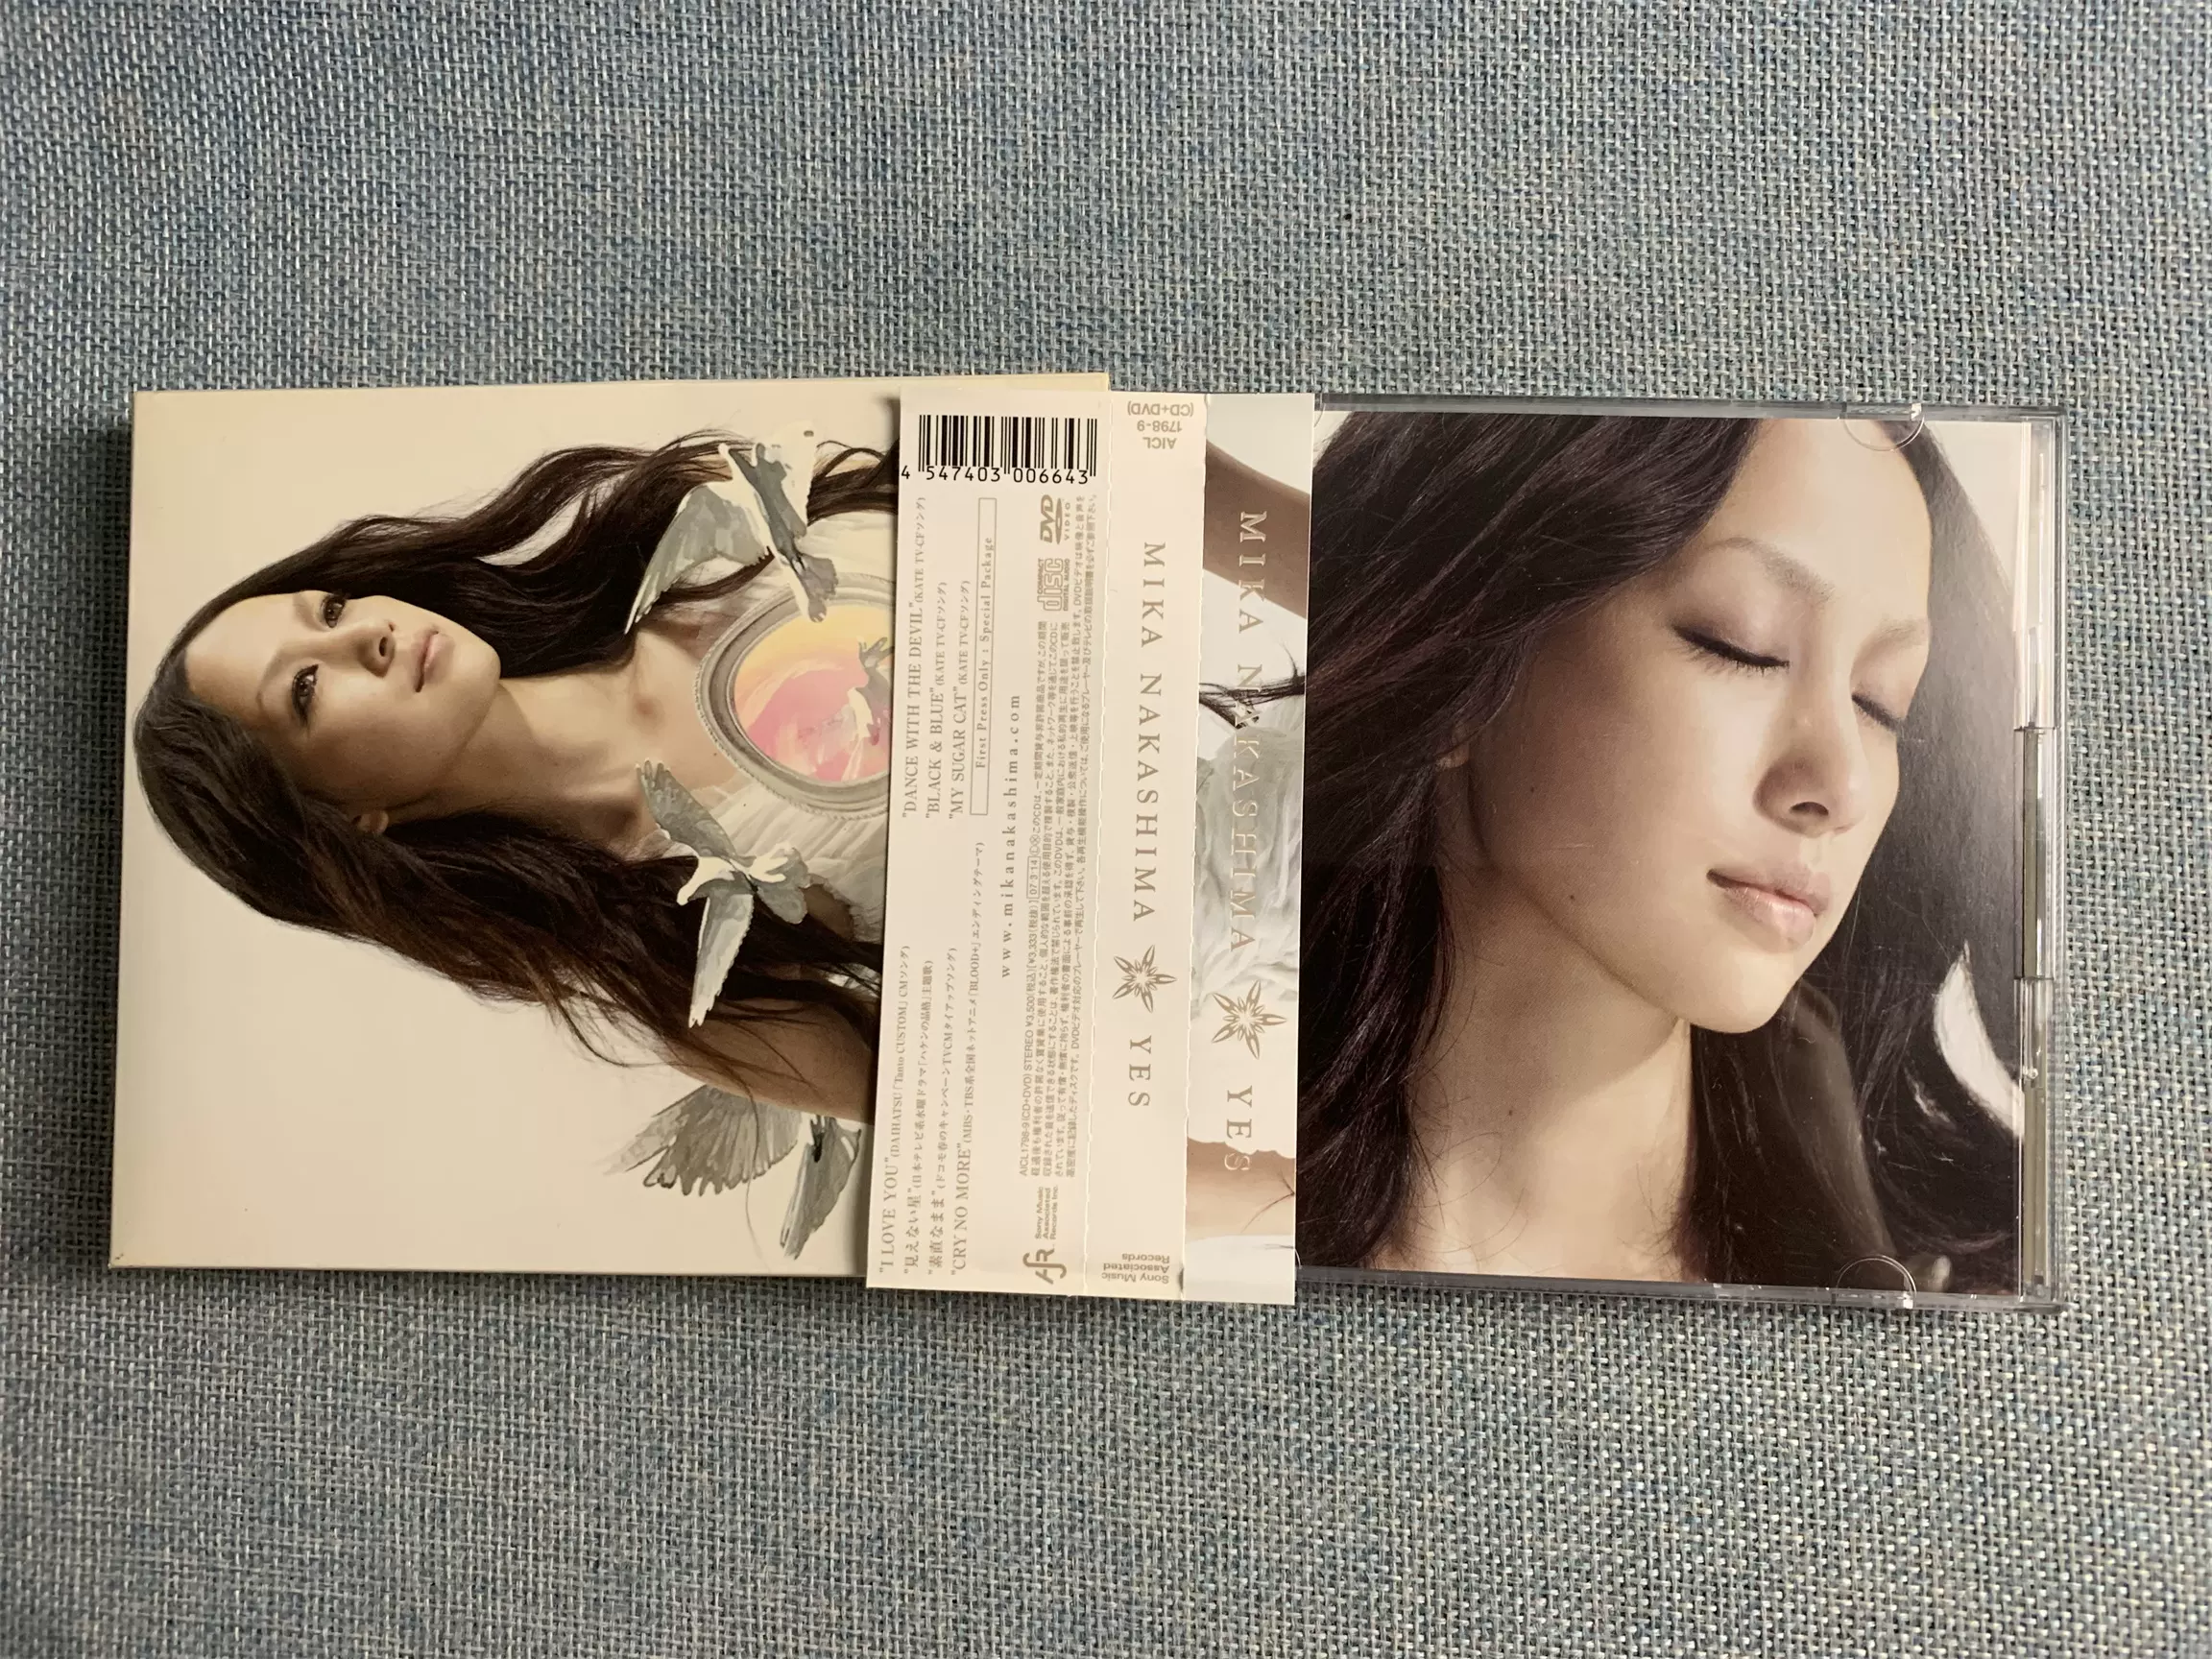 別売りでも何枚でもオッケーですCD 西野カナ 嵐 加藤ミリヤ 柴咲コウGREENAKB48中島美嘉ICONIQ